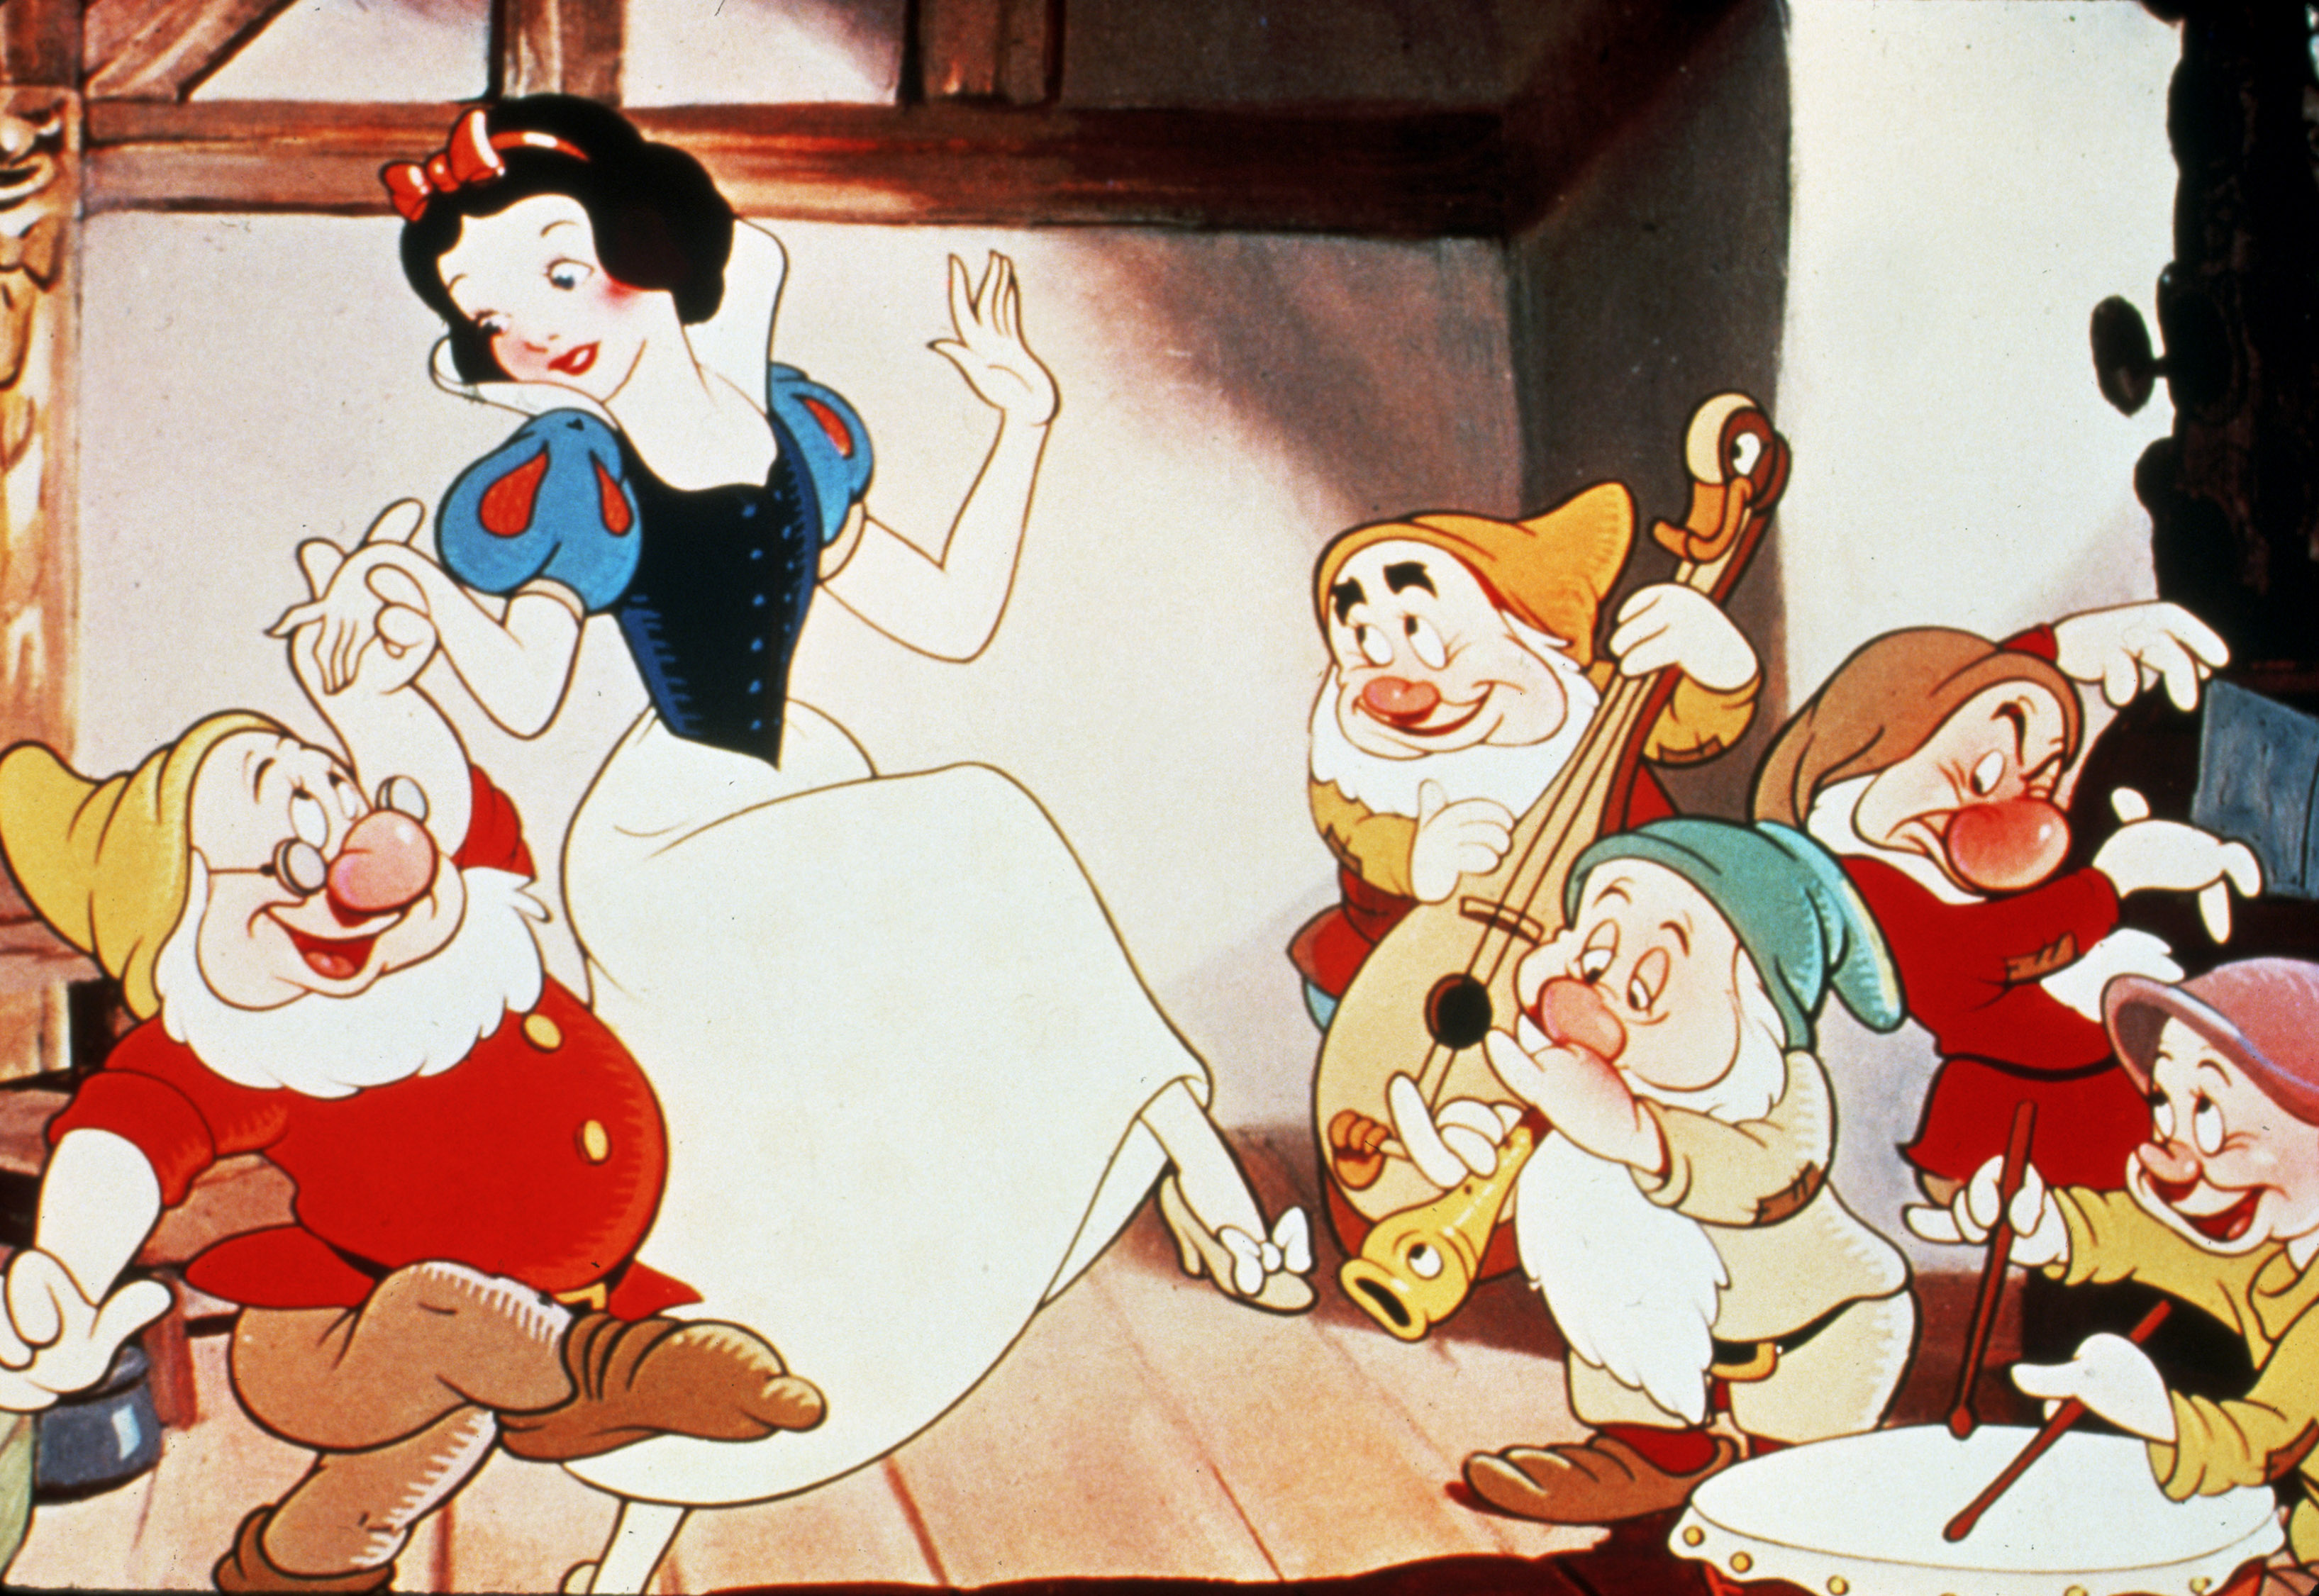 Смотреть бесплатно онлайн сказку белоснежка и семь гномов: Белоснежка и семь Гномов мультфильм 1937 смотреть онлайн бесплатно